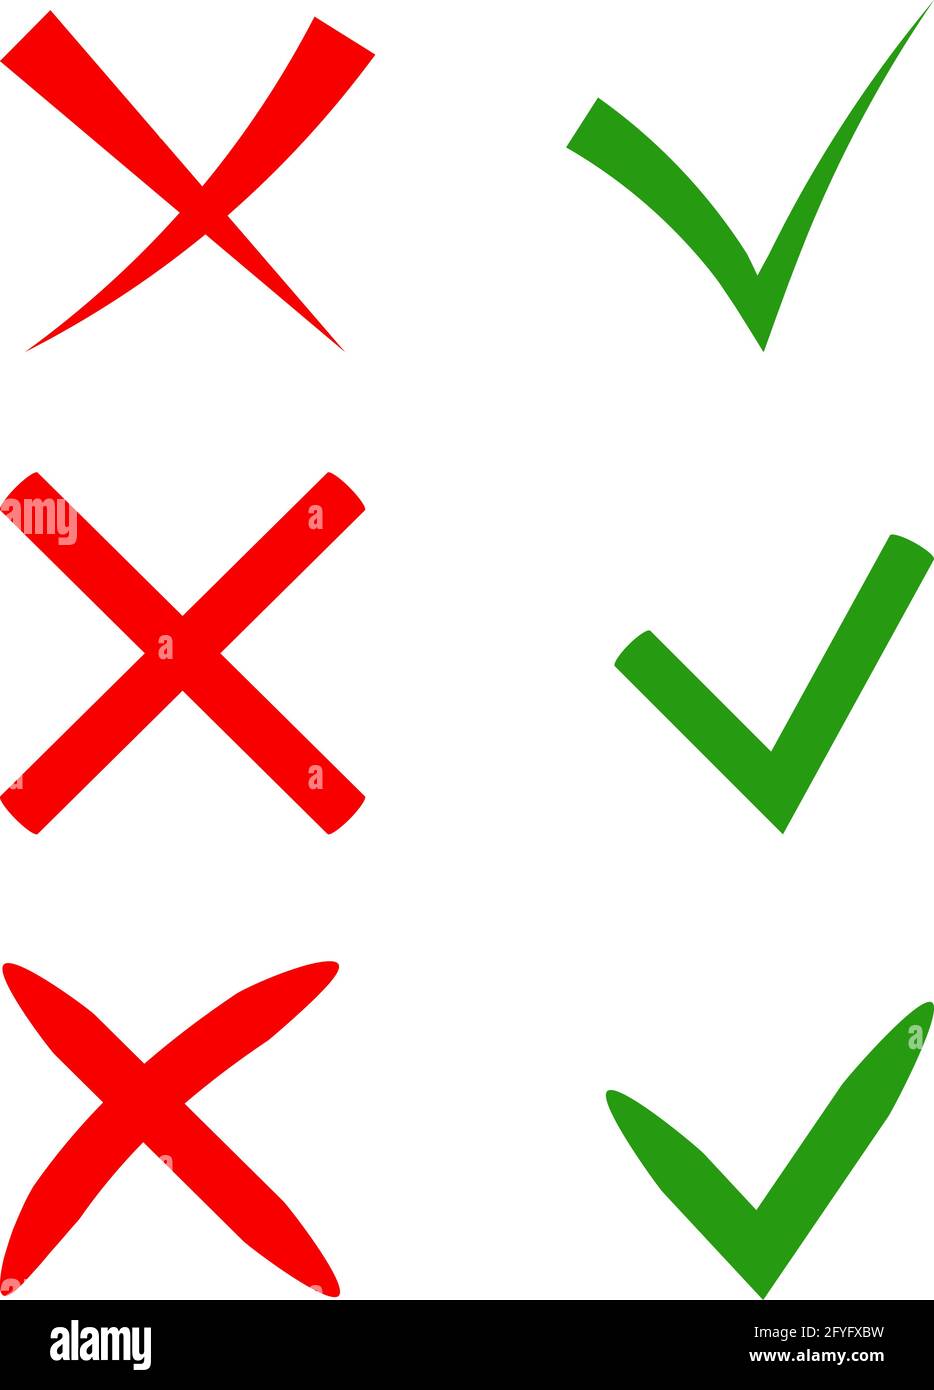 Vektor-stylische Häkchen gesetzt. Grüne Zecke und rotes Kreuz in verschiedenen Formen. JA oder NEIN Akzeptieren und Ablehnen. Vektorsymbole für Internet-Schaltflächen p Stock Vektor